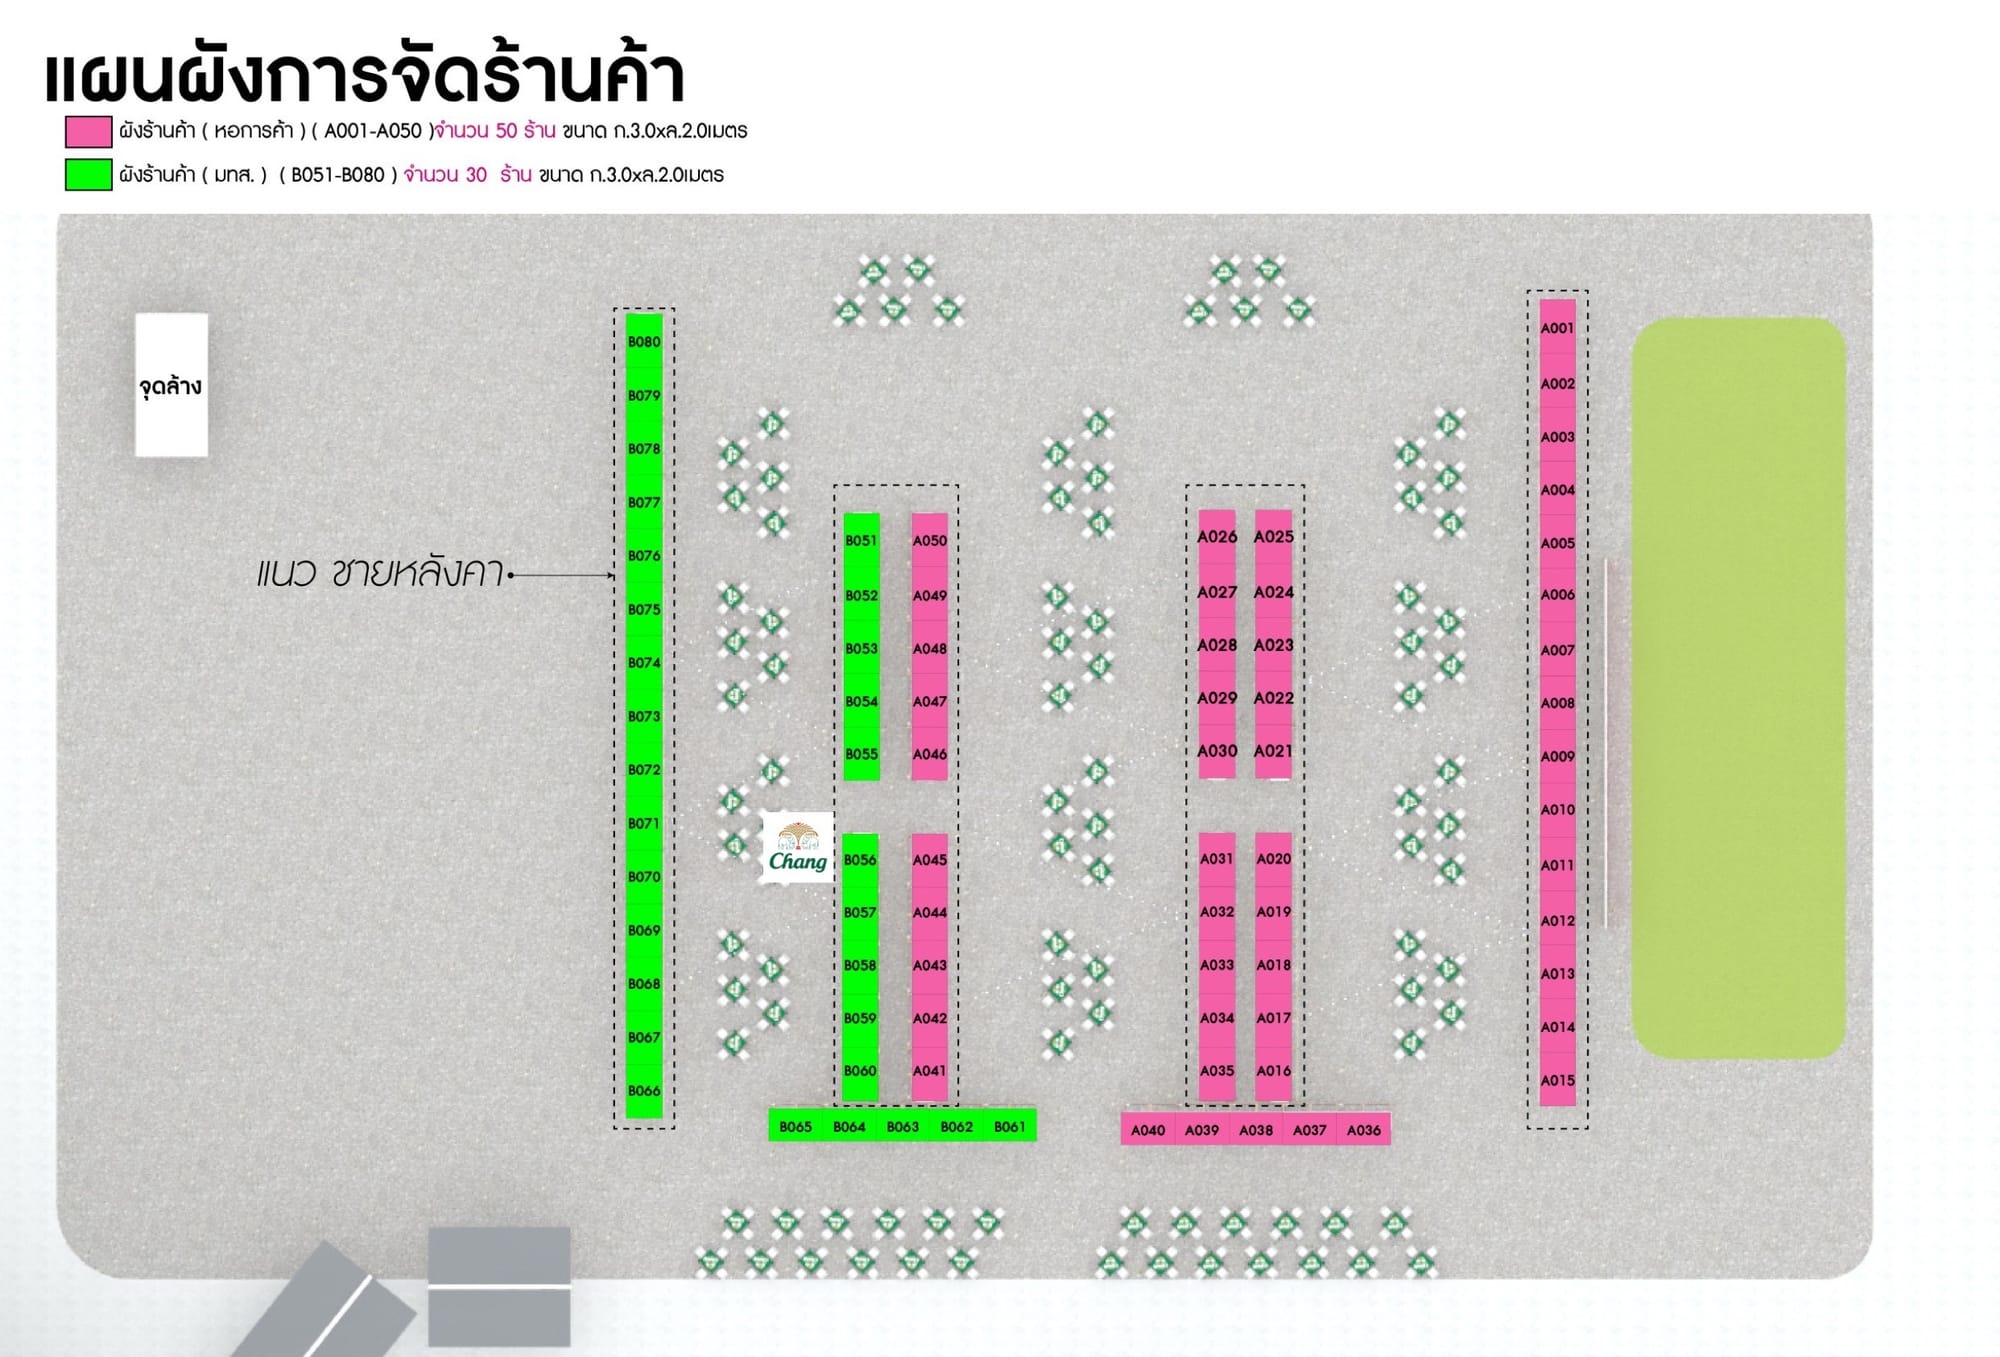 หอการค้าจังหวัดนครราชสีมา เปิดจองบูธ  งาน THAILAND BEEF FEST 2024 วันที่ 1 - 4 กุมภาพันธ์ 2567  ณ อาคารอำนวยการอุทยานวิทยาศาสตร์ภาคตะวันออกเฉียงเหนือ (จ.นครราชสีมา)